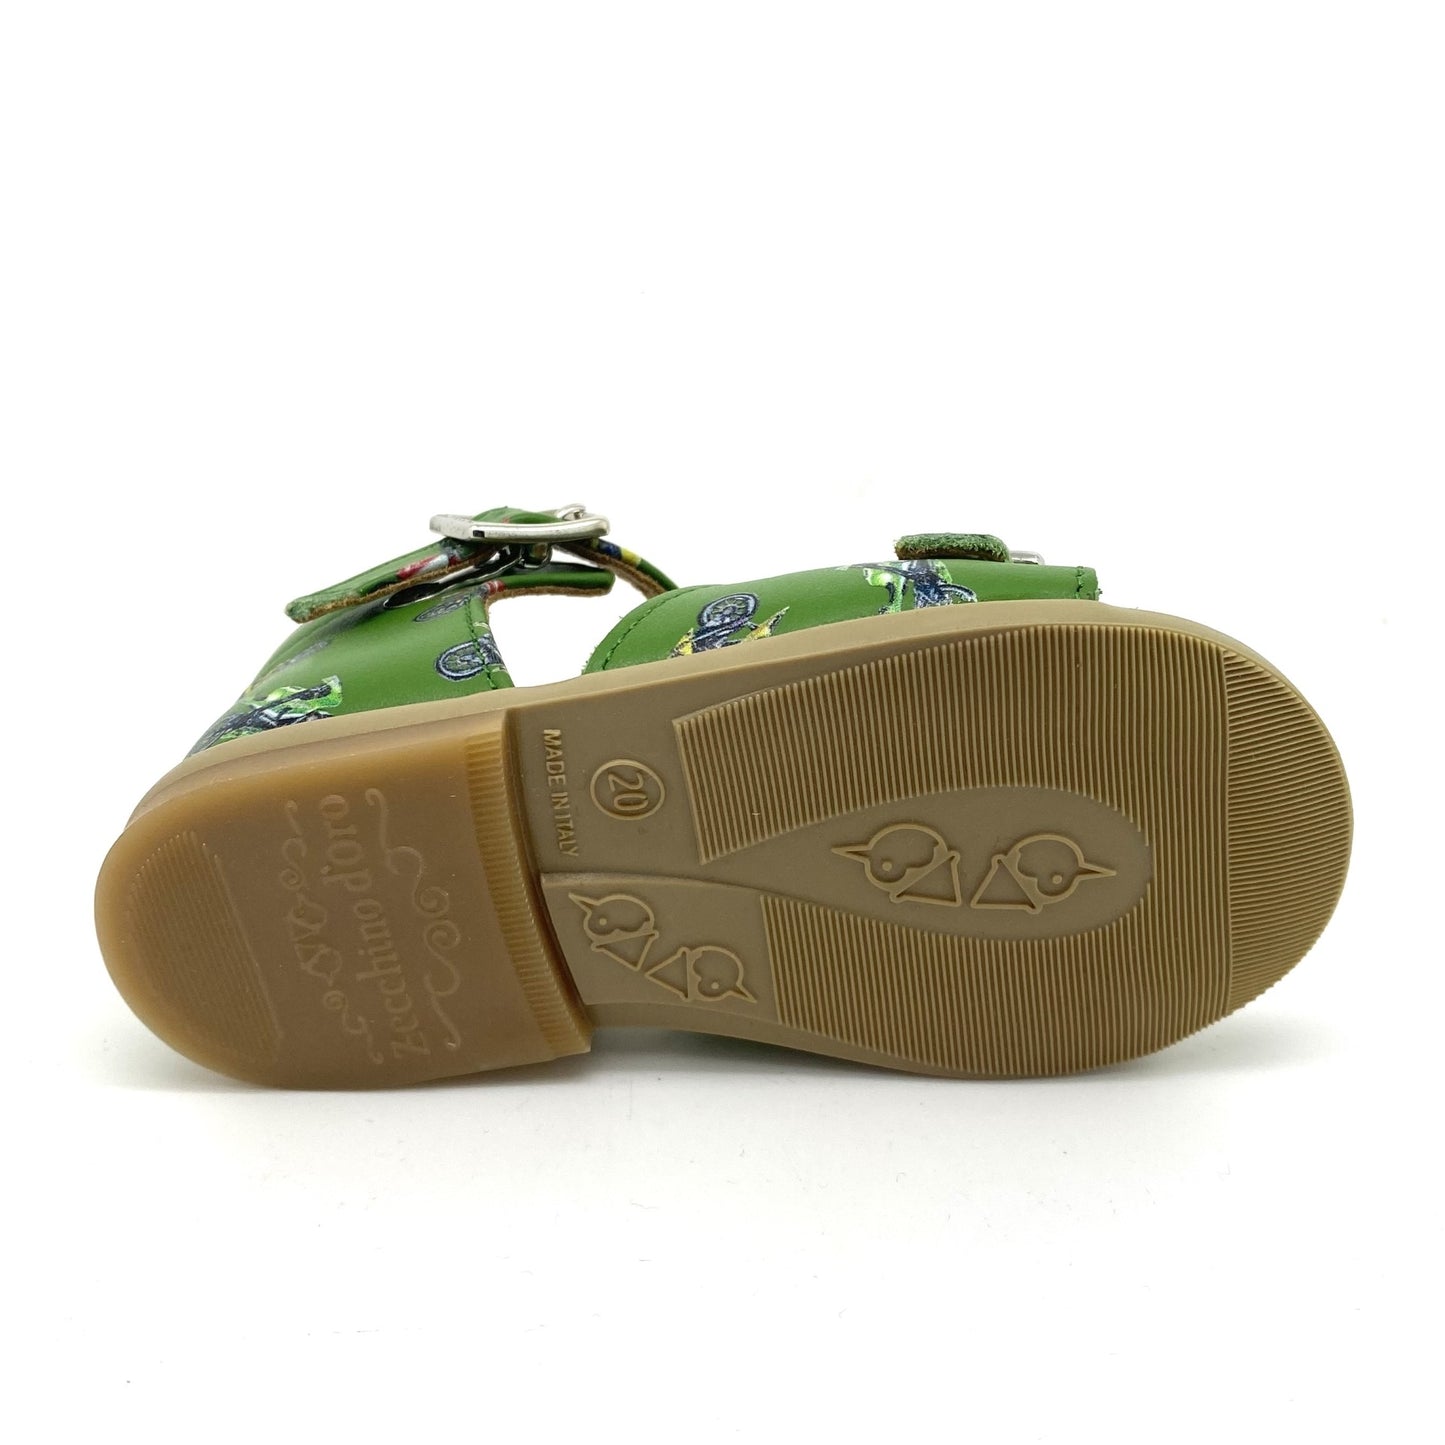 Zecchino D'oro sandaal groen met brommers.